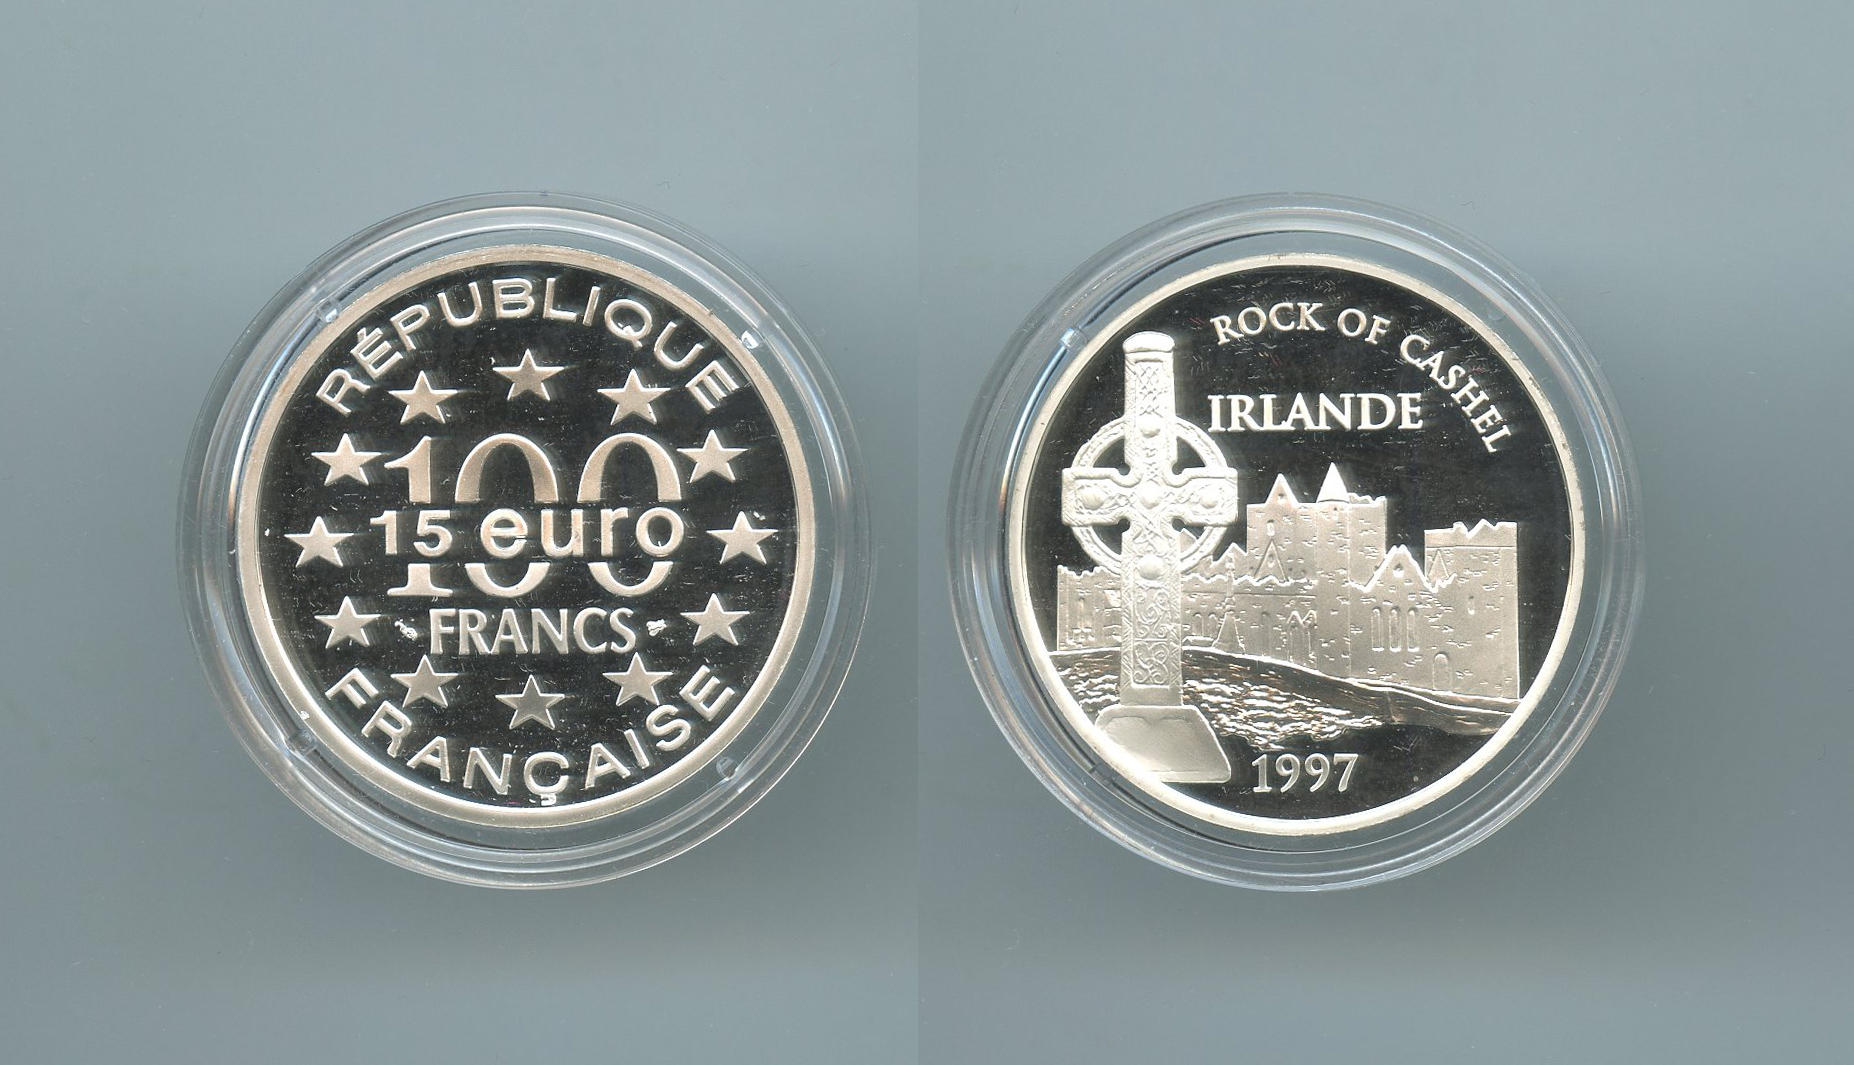 FRANCIA, 100 Francs - 15 Ecus 1997 "Rocca di Cashel - Irlanda"